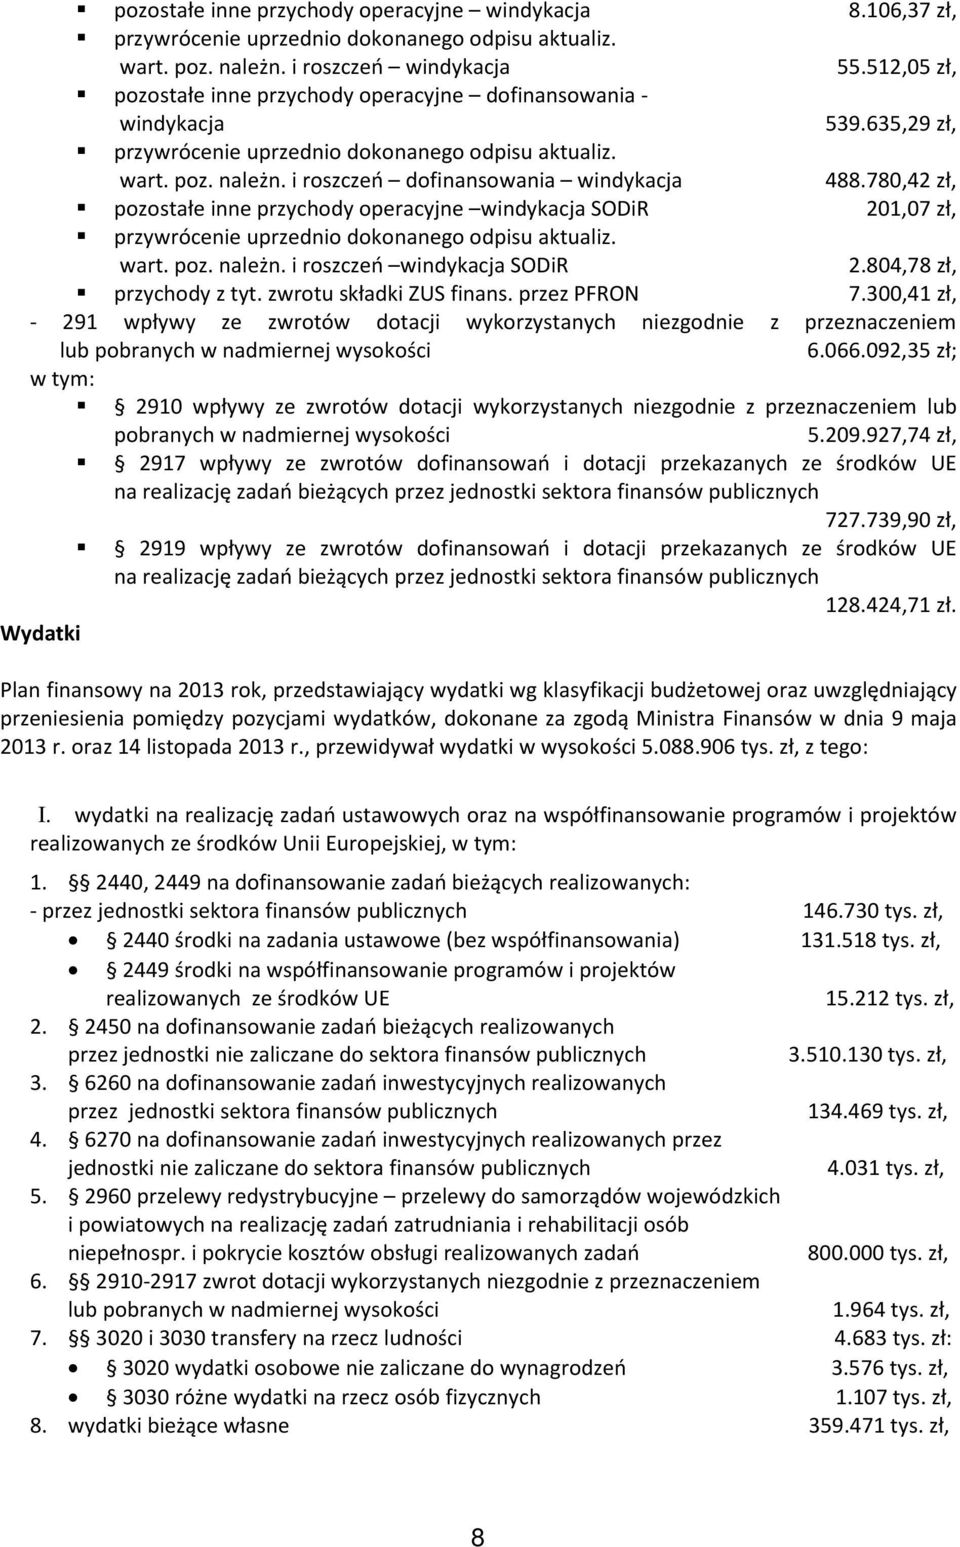 i roszczeń dofinansowania windykacja 488.780,42 zł, pozostałe inne przychody operacyjne windykacja SODiR 201,07 zł, przywrócenie uprzednio dokonanego odpisu aktualiz. wart. poz. należn.